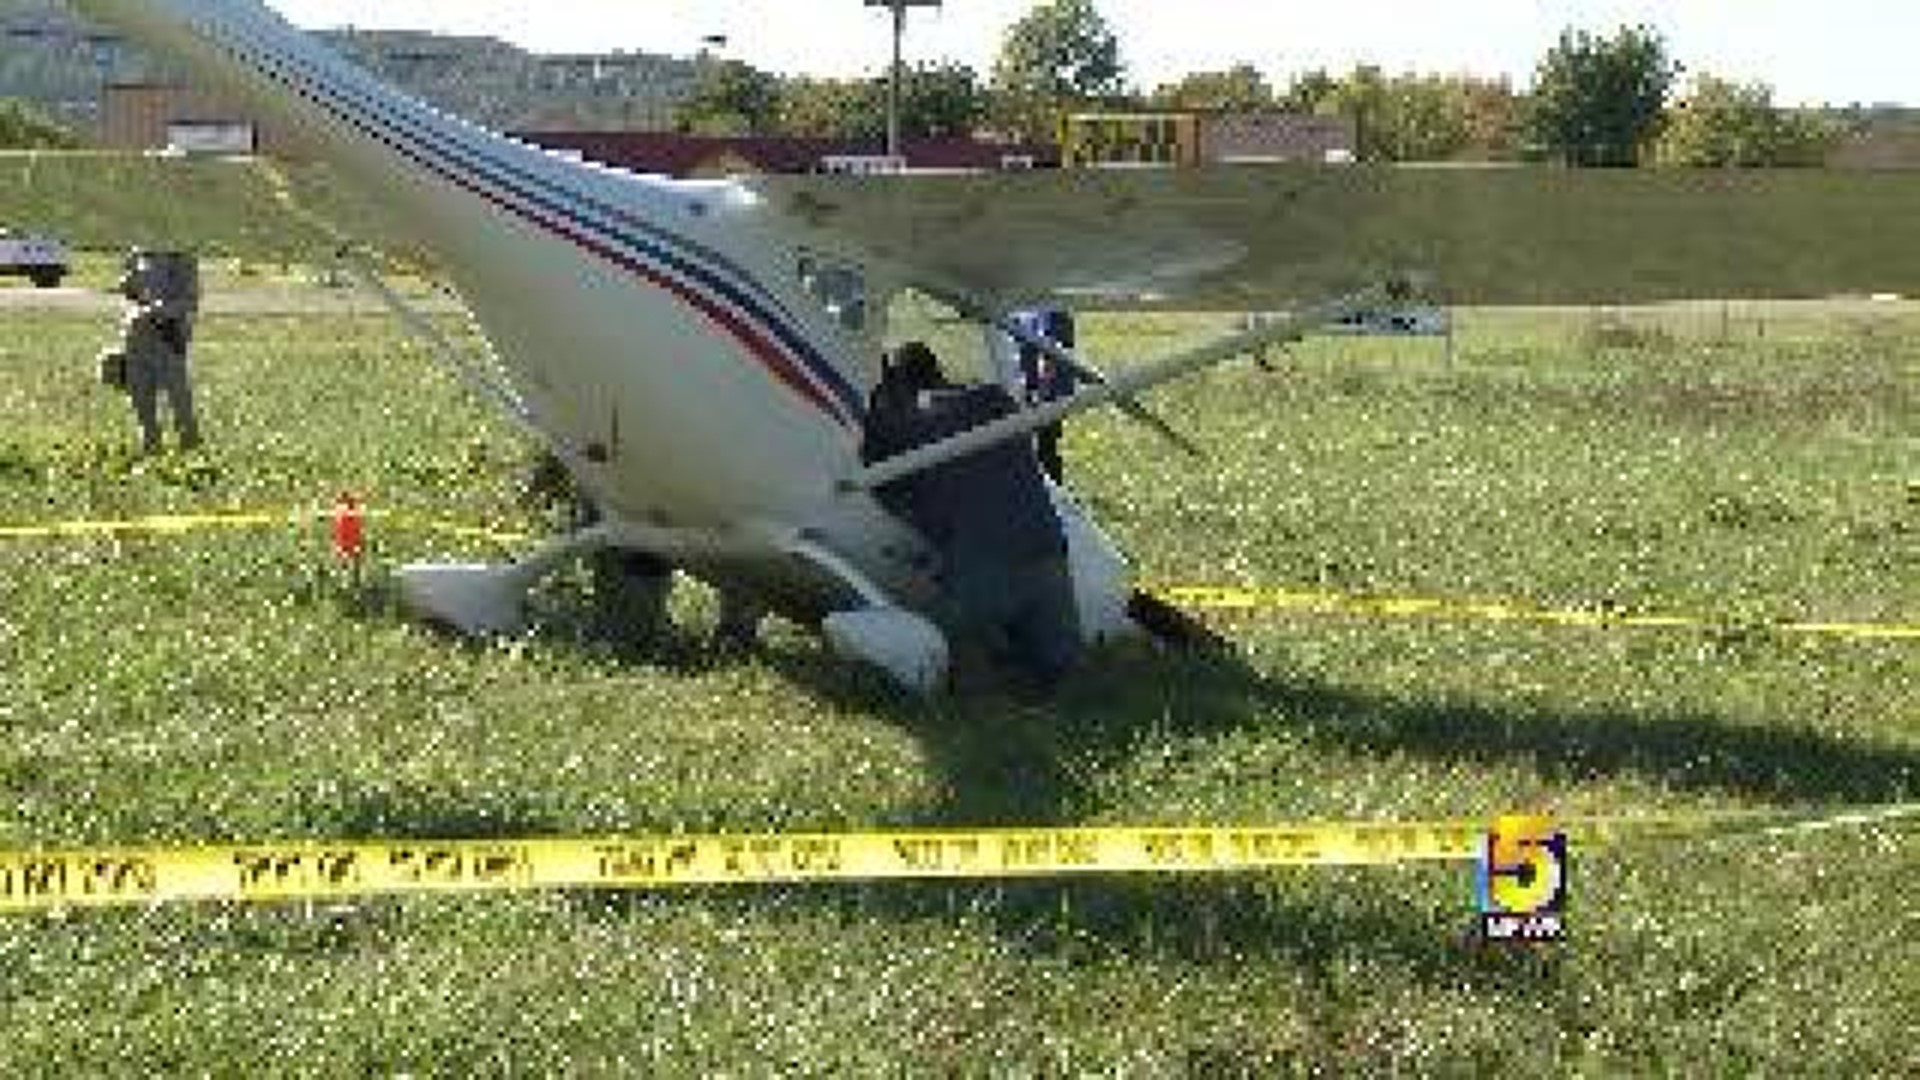 No Injuries In Elkins Airplane Crash